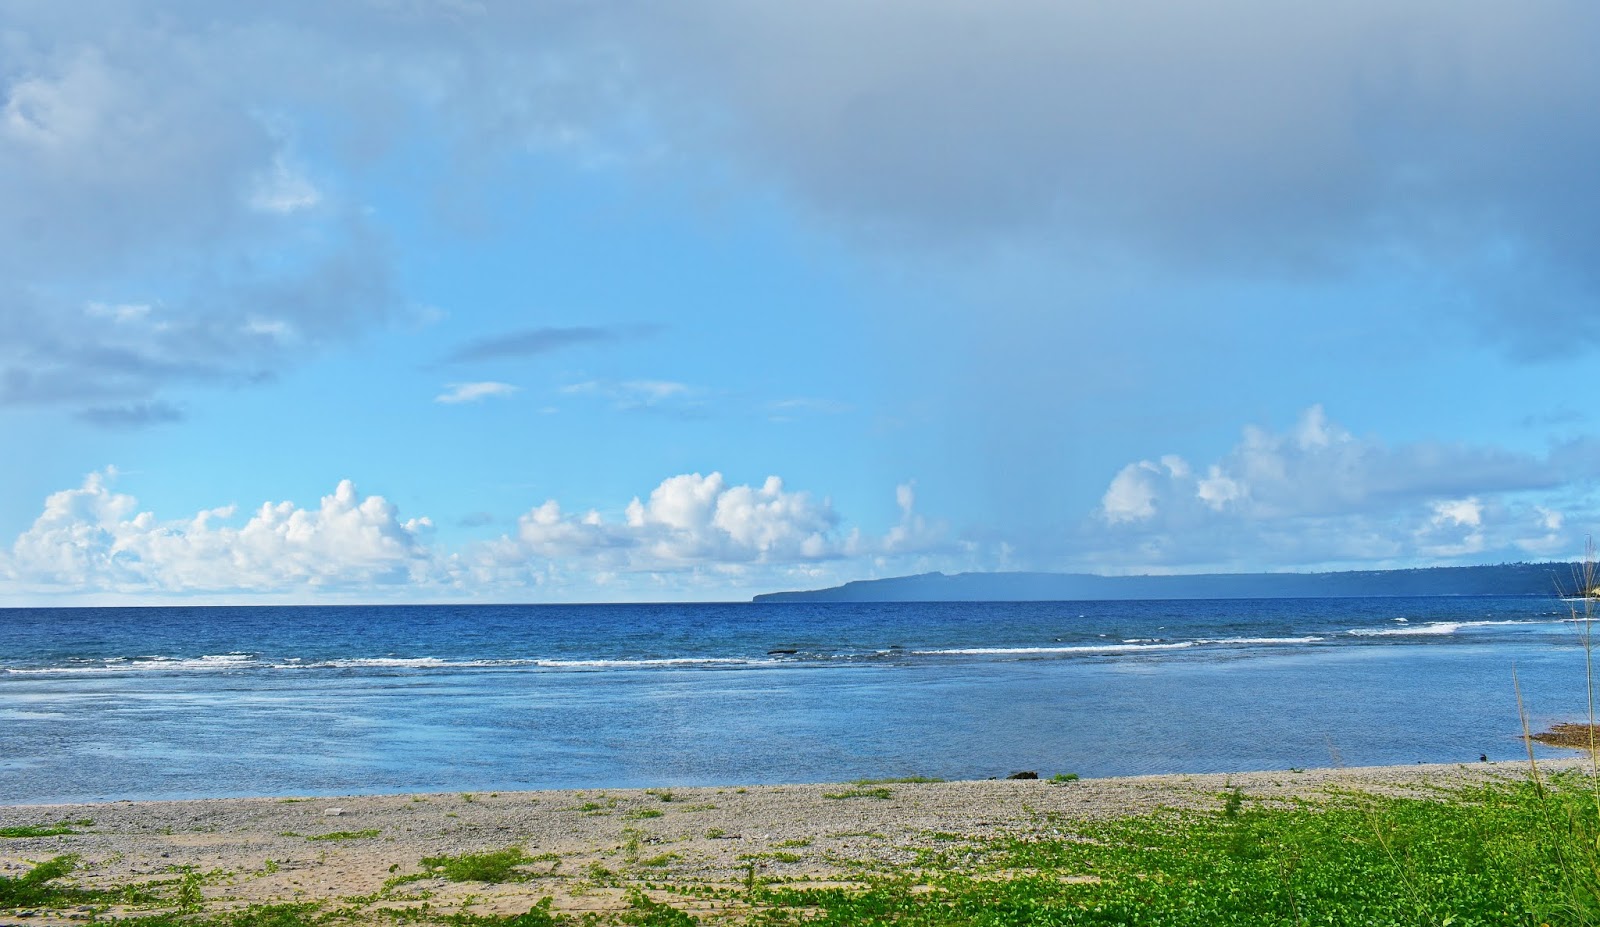 Laulau Beach'in fotoğrafı ve yerleşim